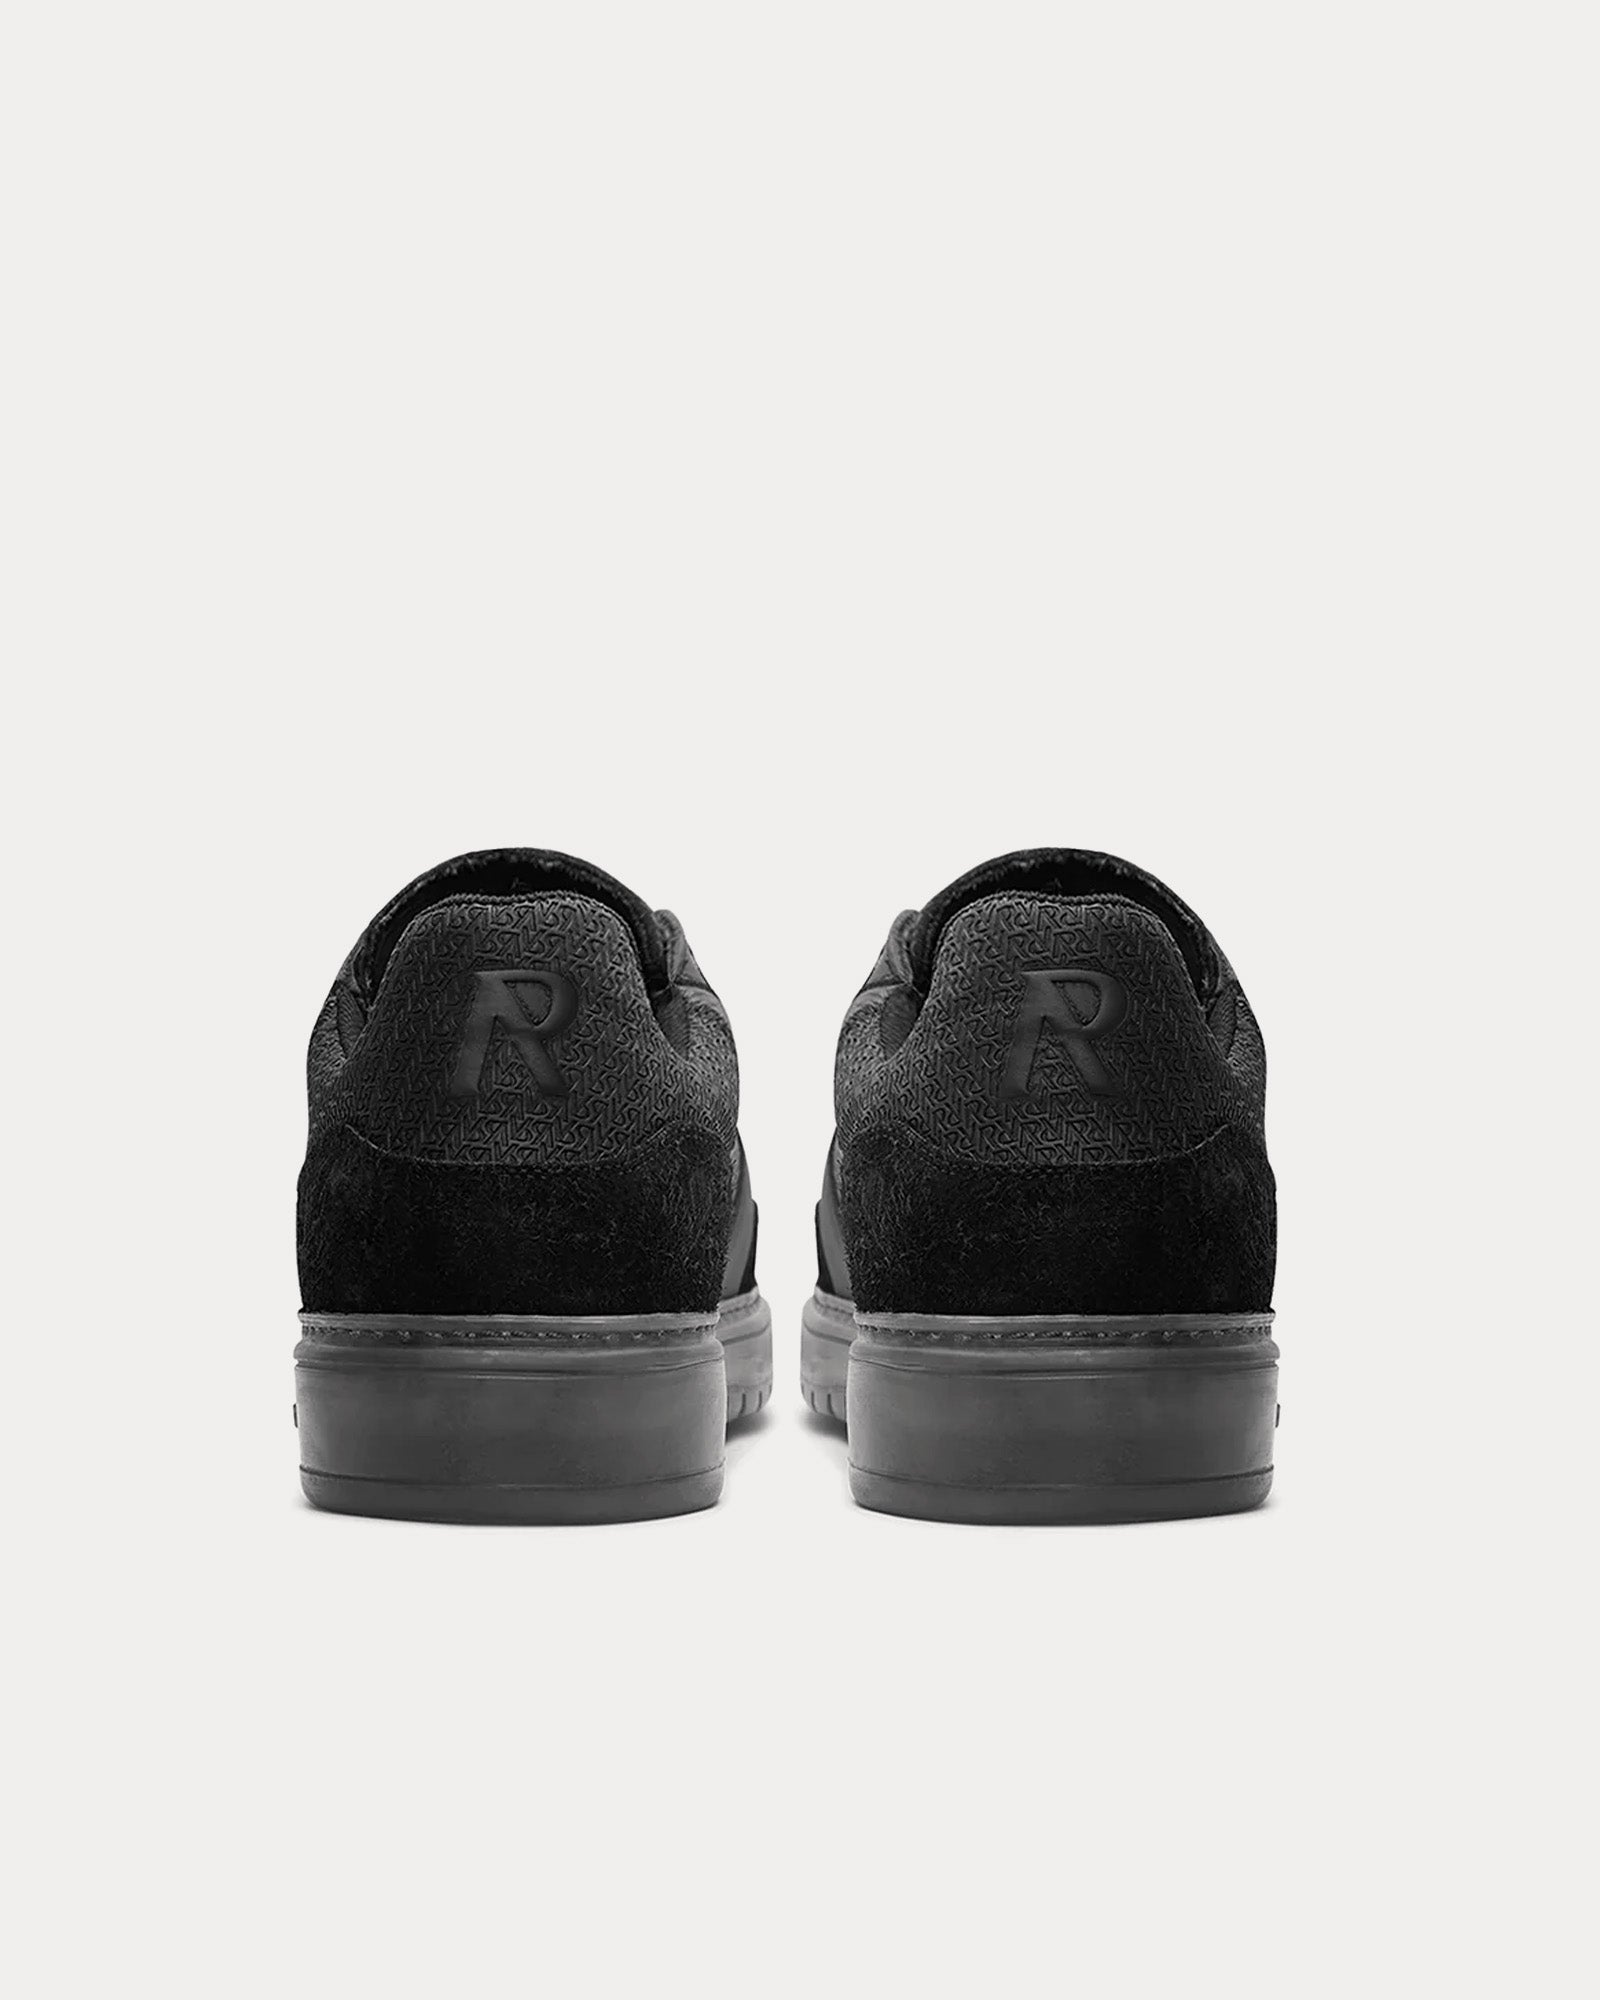 Represent - Virtus Off Black Low Top Sneakers